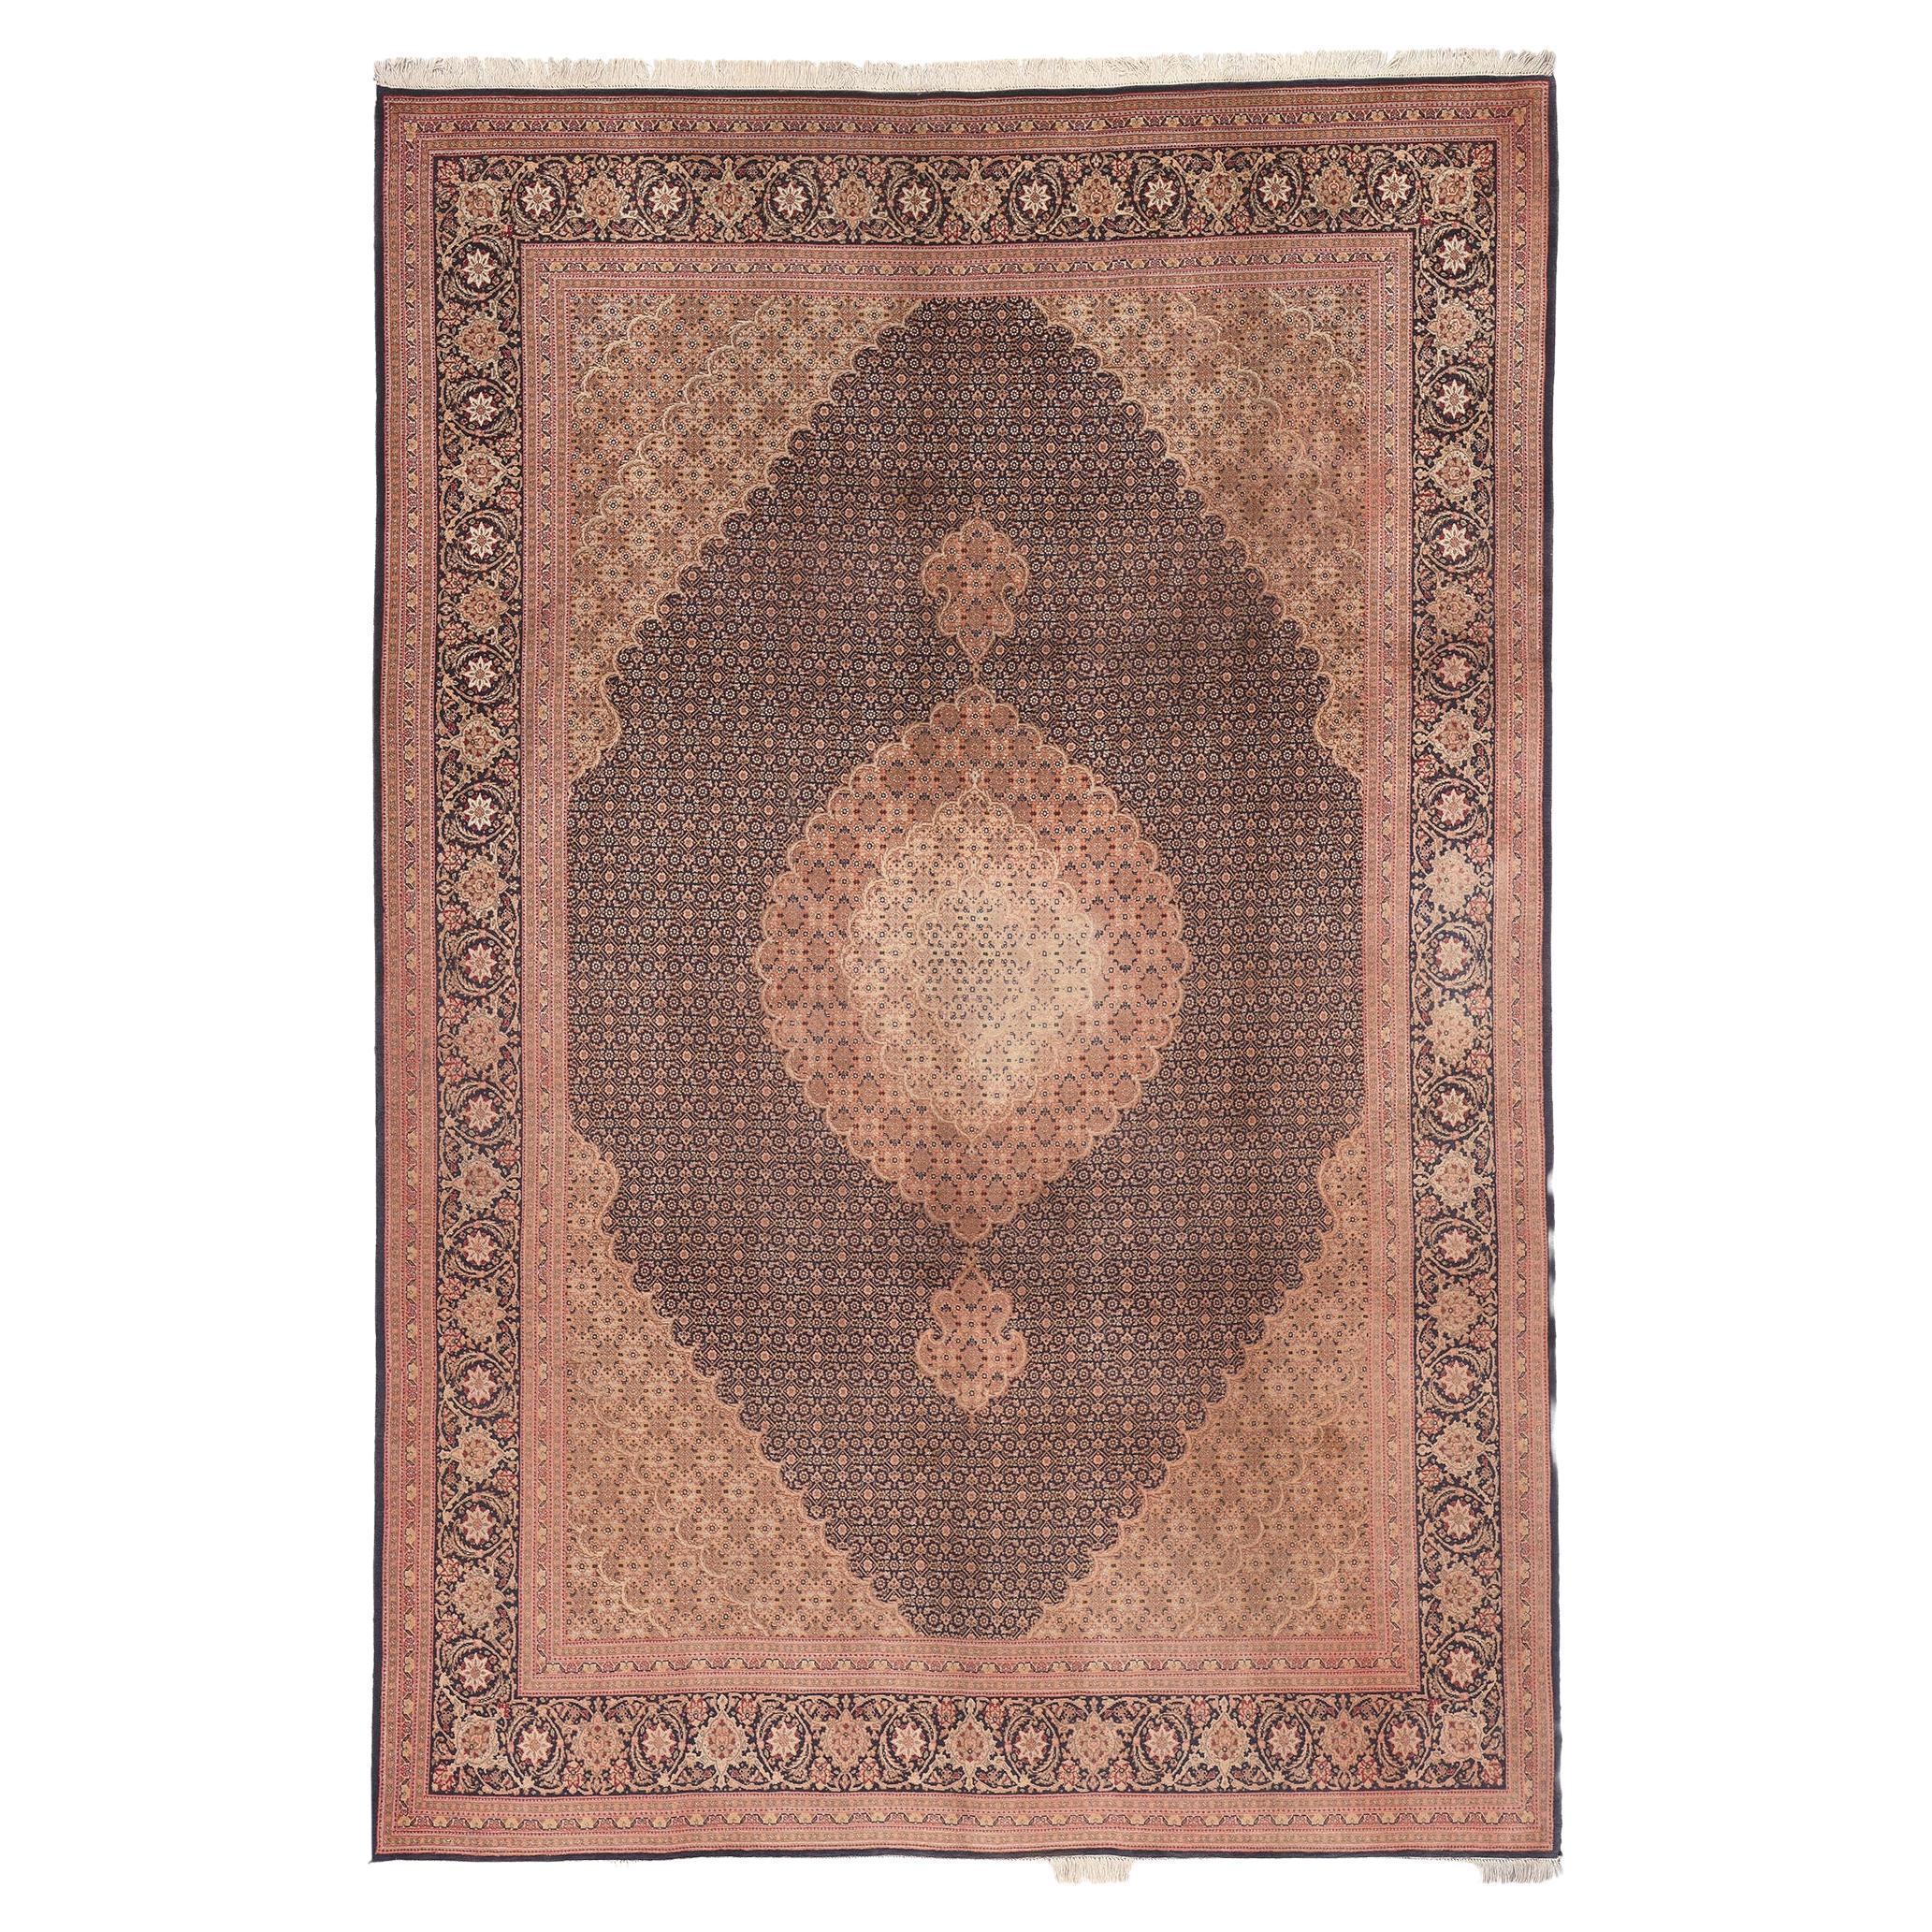 Persischer Tabriz-Teppich im Vintage-Stil, zeitlose Eleganz trifft auf traditionelle Sensibilität